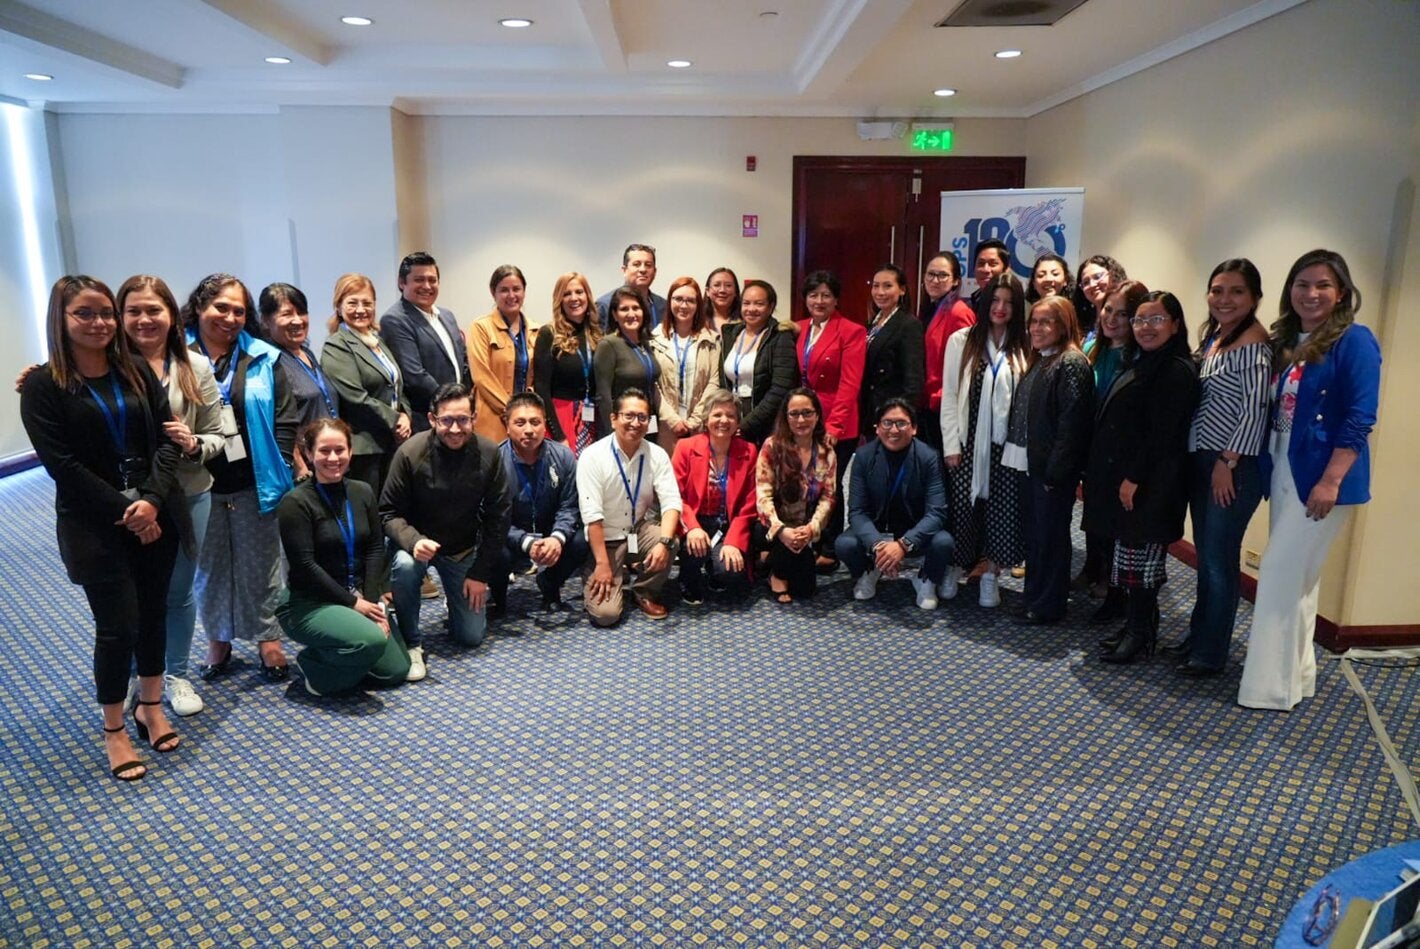 35 profesionales sanitarios de Ecuador participaron en taller para fortalecer la inmunización en el país